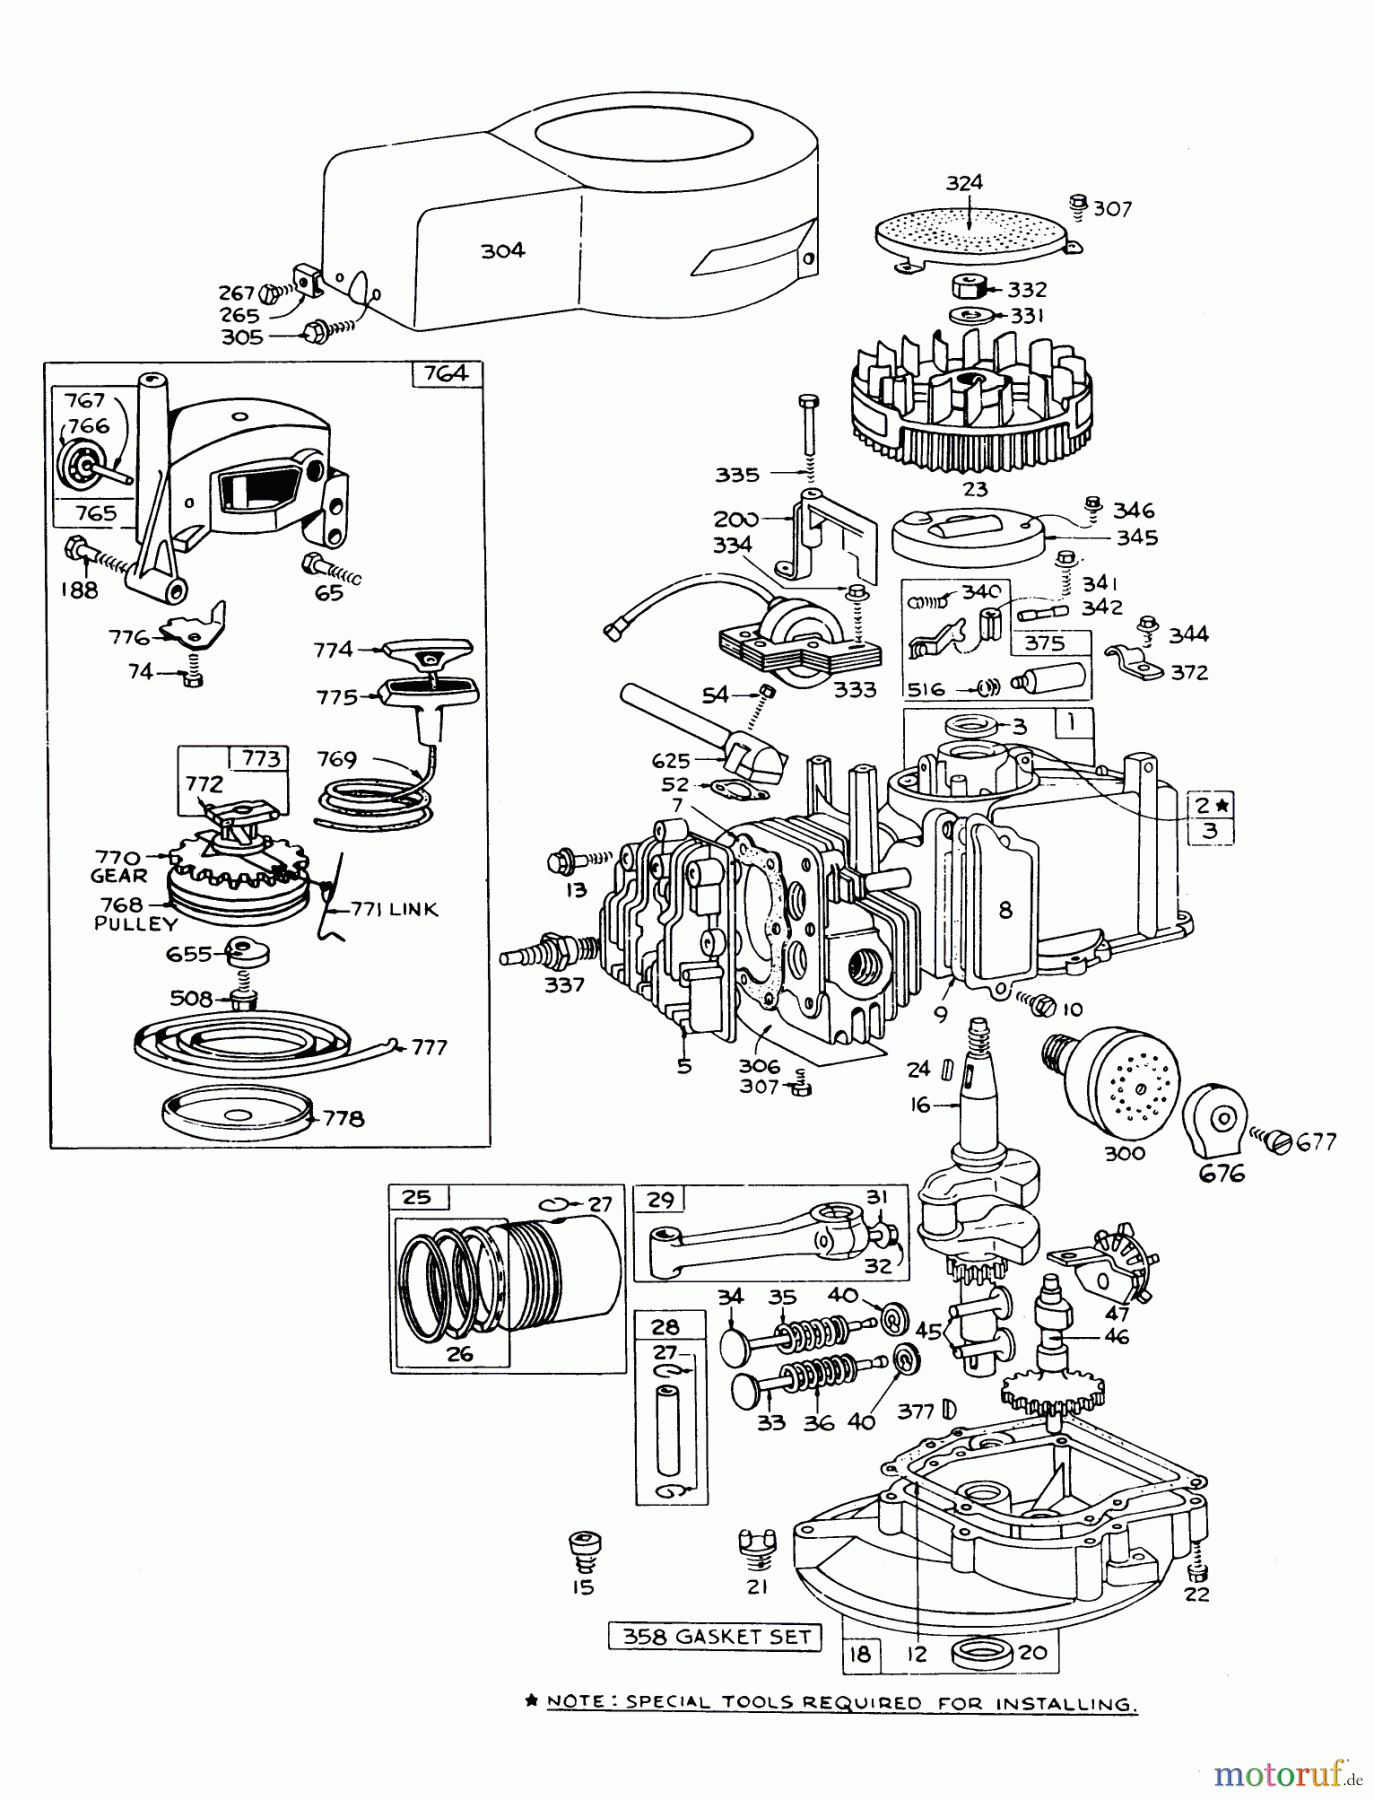  Toro Neu Mowers, Walk-Behind Seite 1 16113 - Toro Whirlwind II Lawnmower, 1978 (8000001-8999999) ENGINE BRIGGS & STRATTON MODEL 92508-0954-01 FOR 19